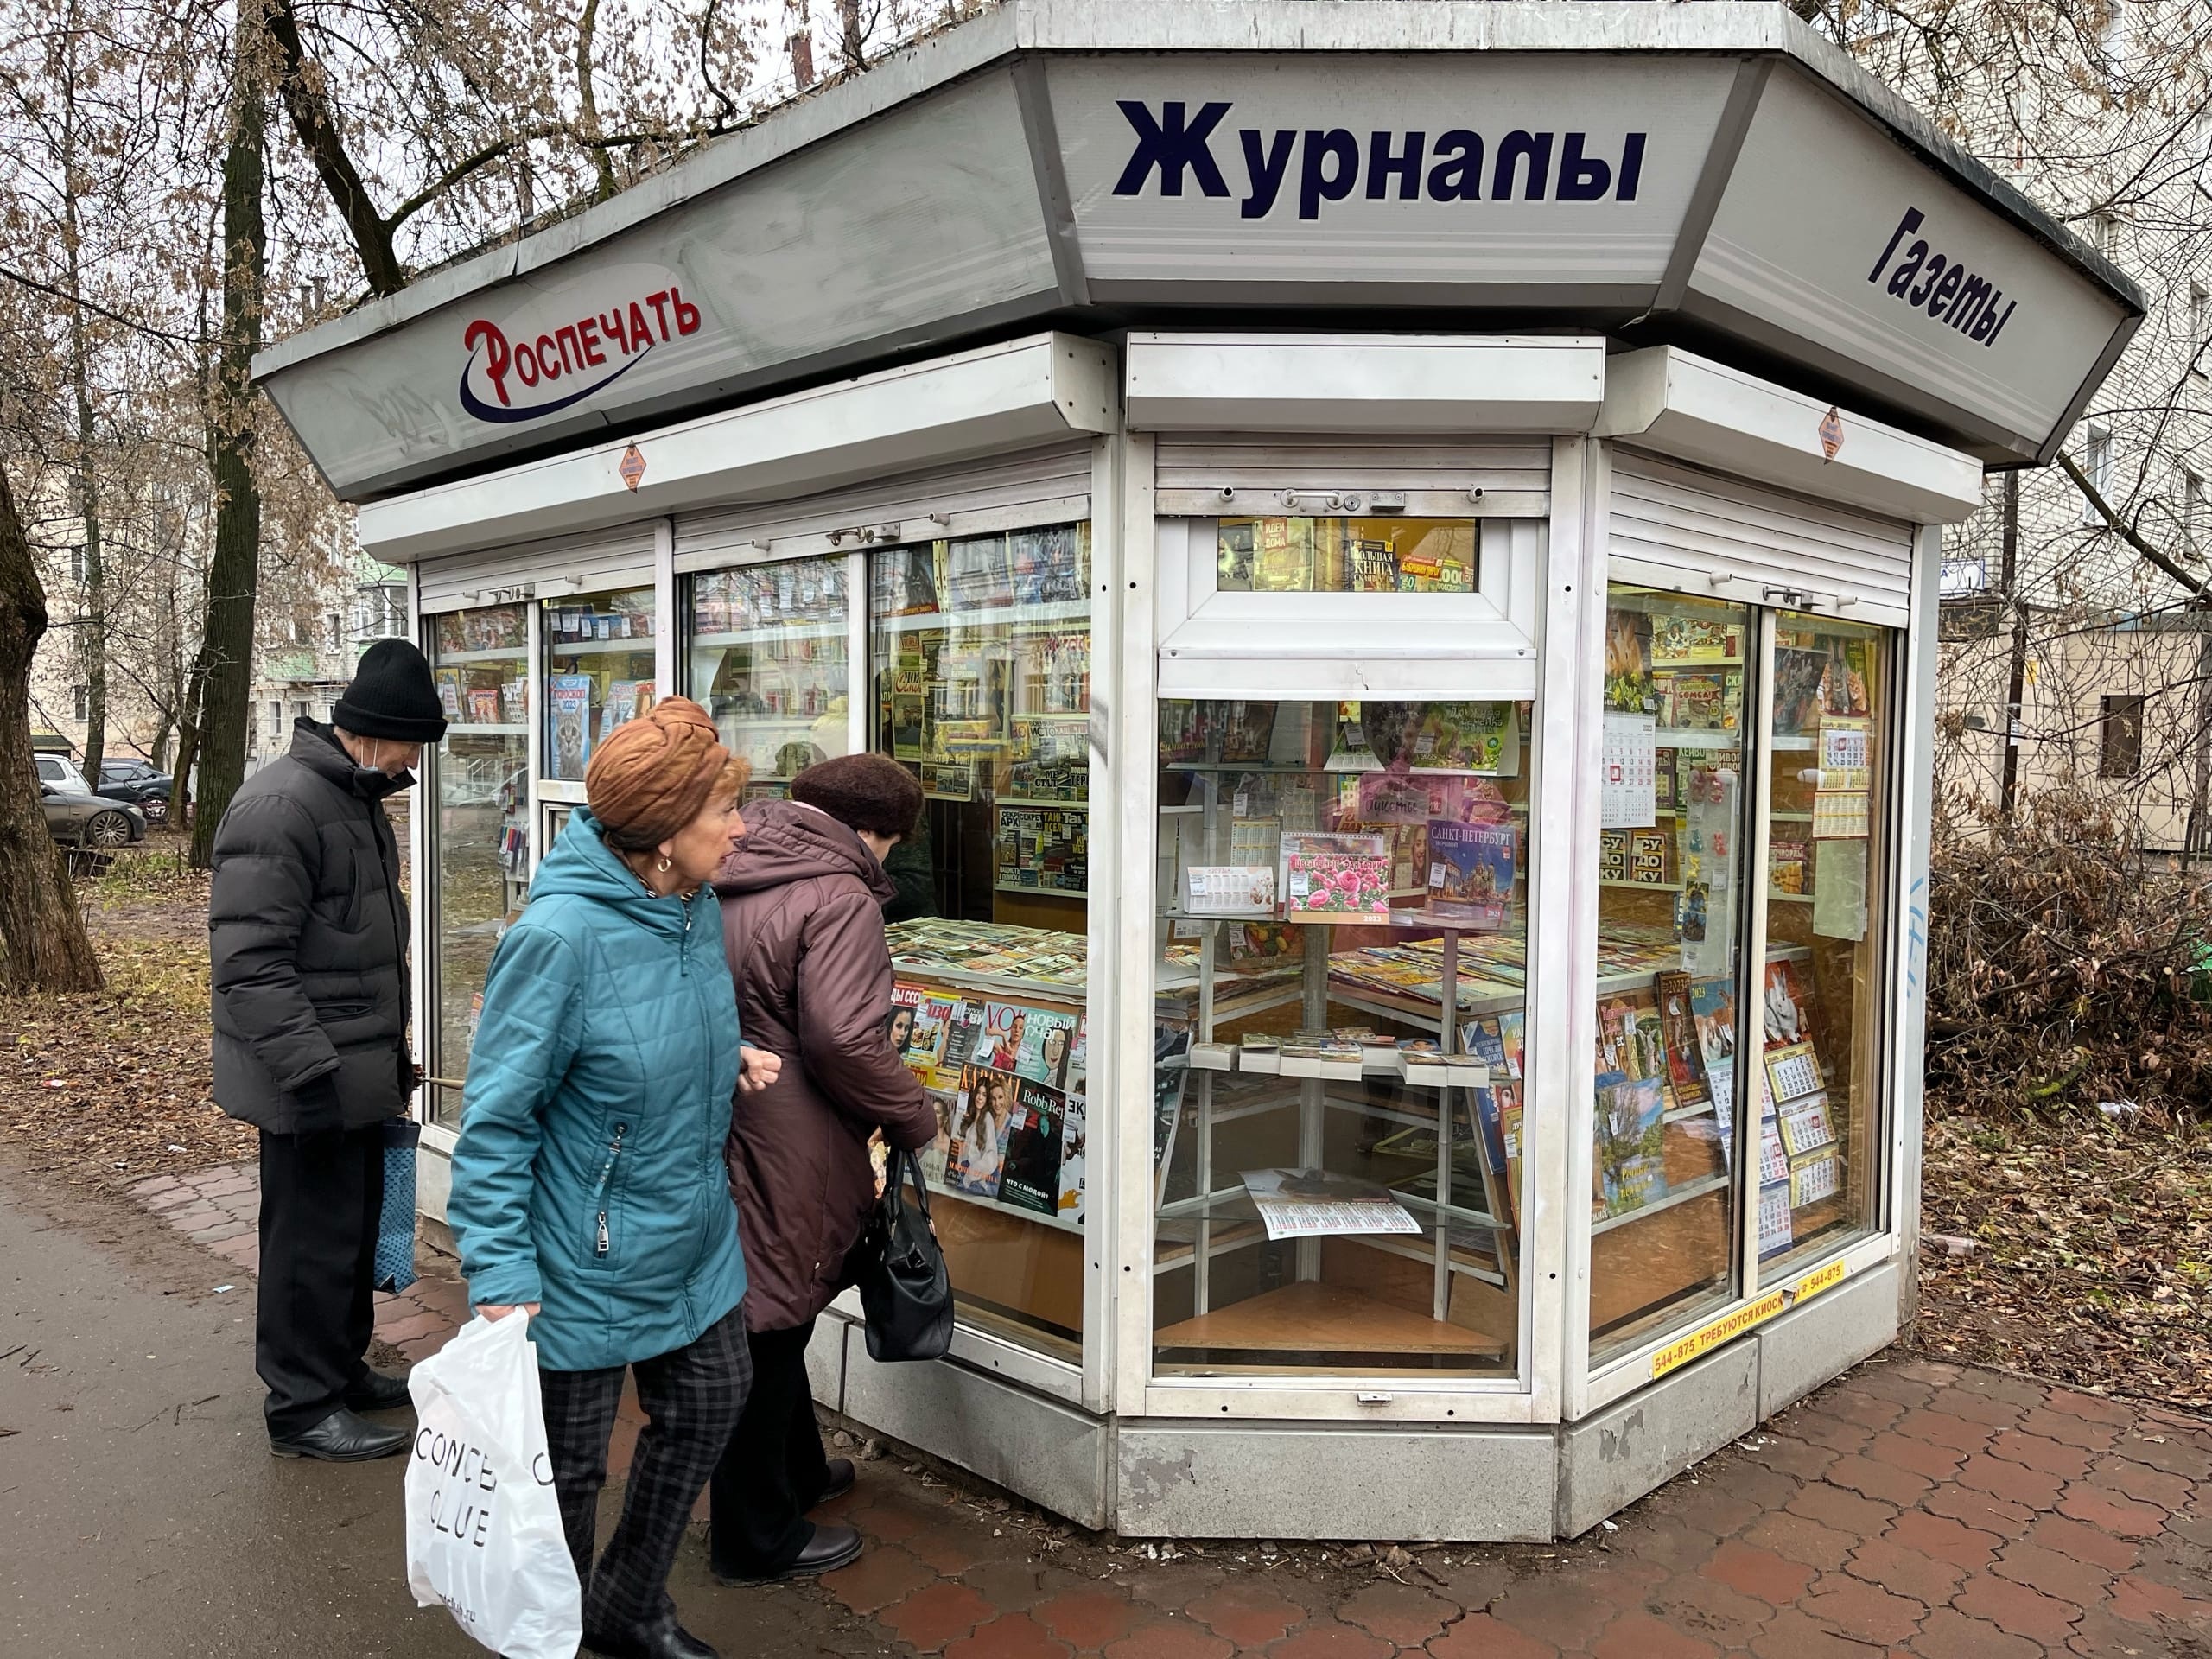 В Кирове свободны более ста мест для размещения ларьков, киосков и павильонов 